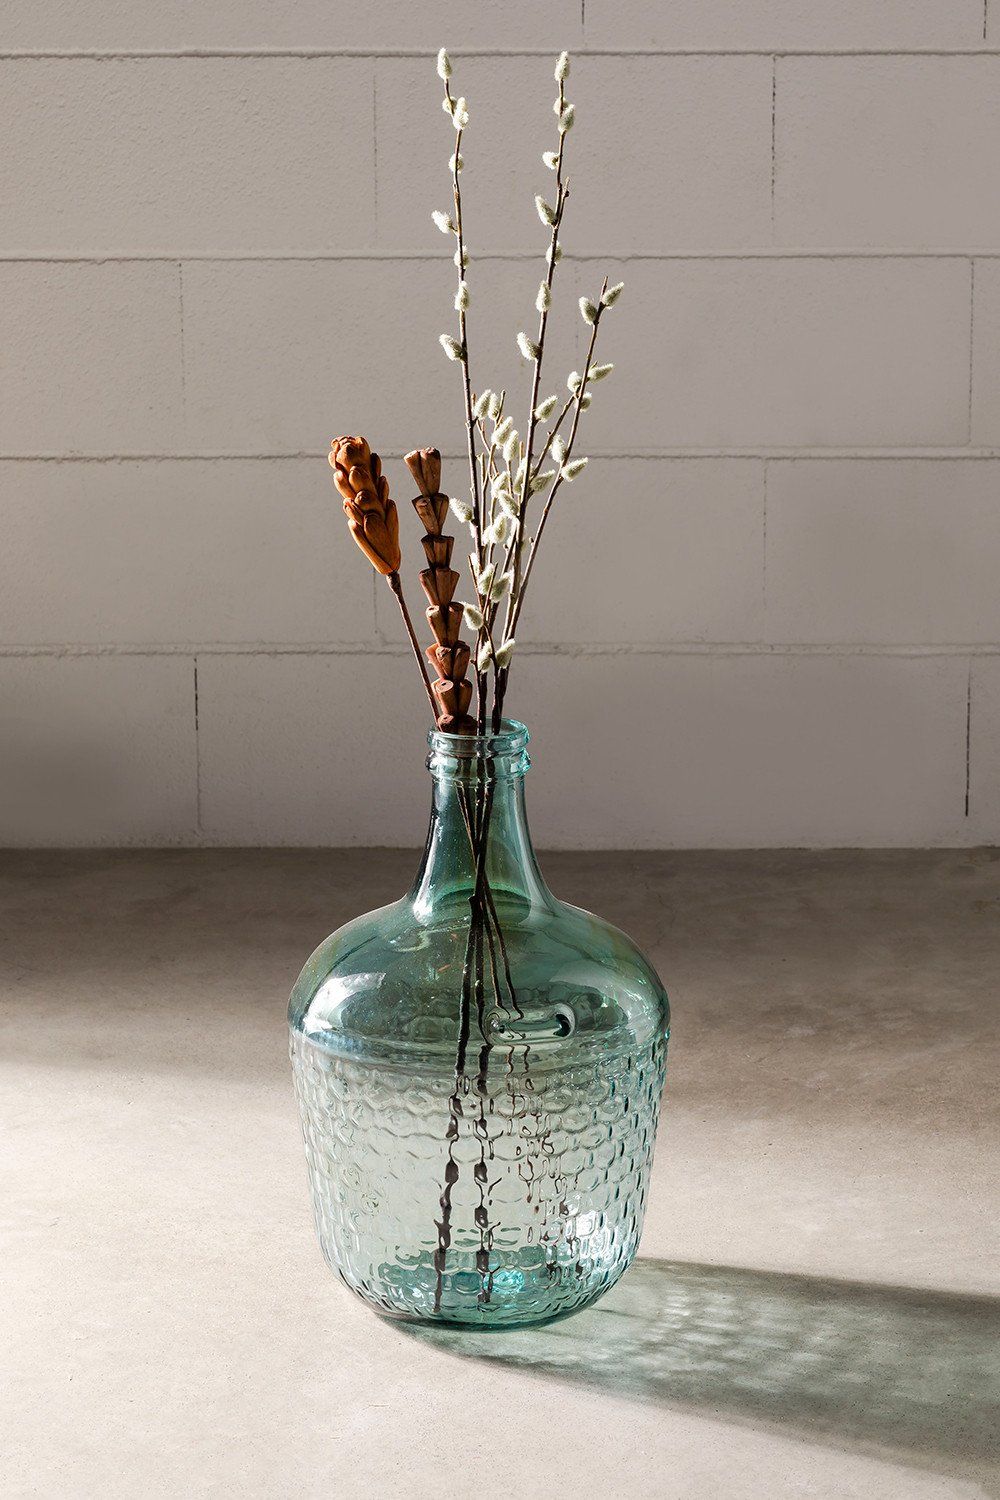 Ideas profesionales para decorar con jarrones de cristal  Jarron de flores,  Decoración de unas, Decoracion con jarrones